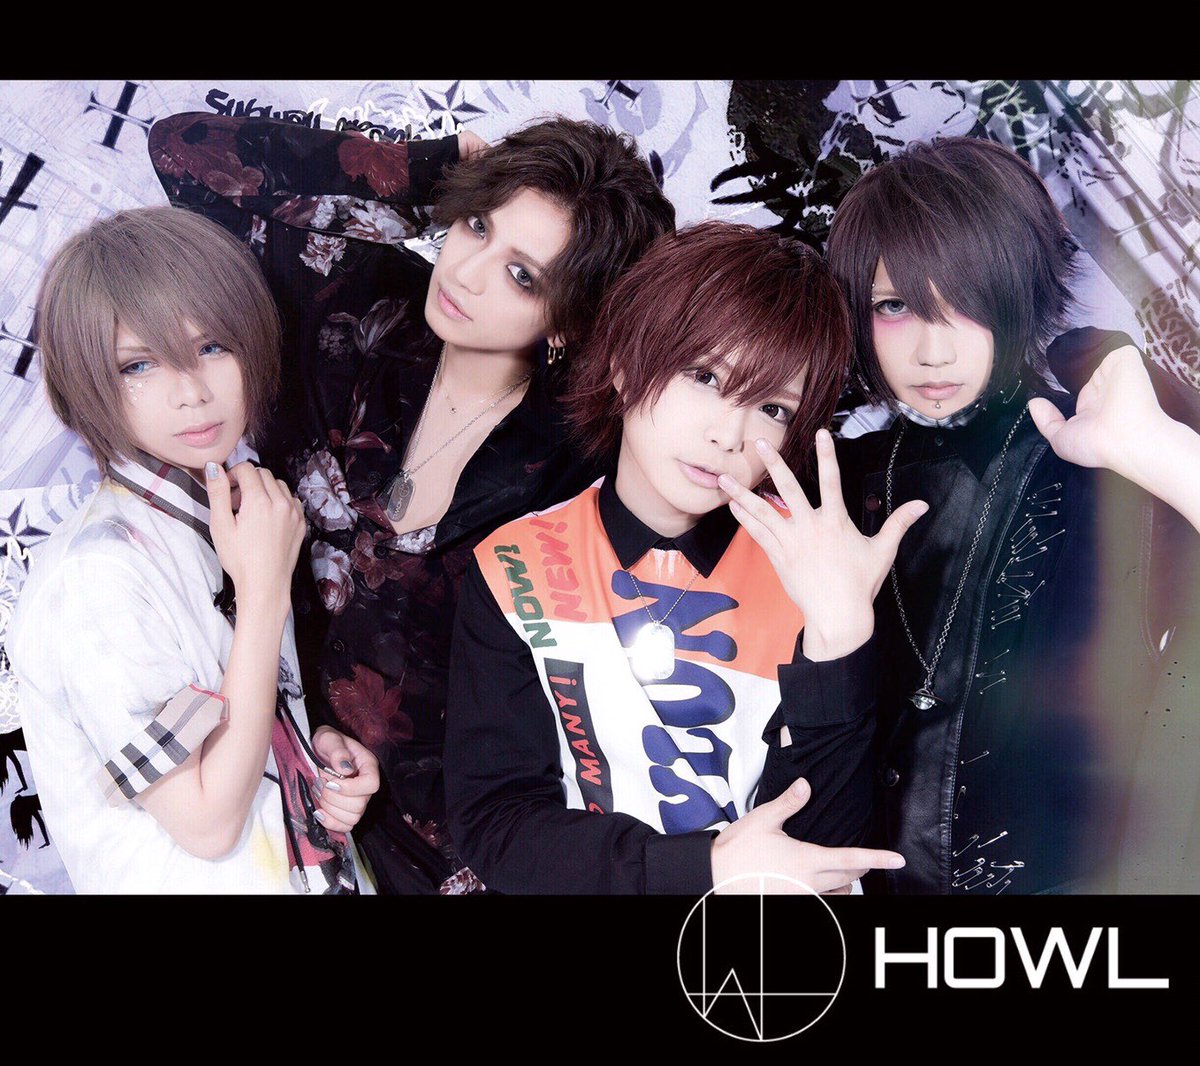 HOWL – Nouveau membre, nouveau CD et nouveau look